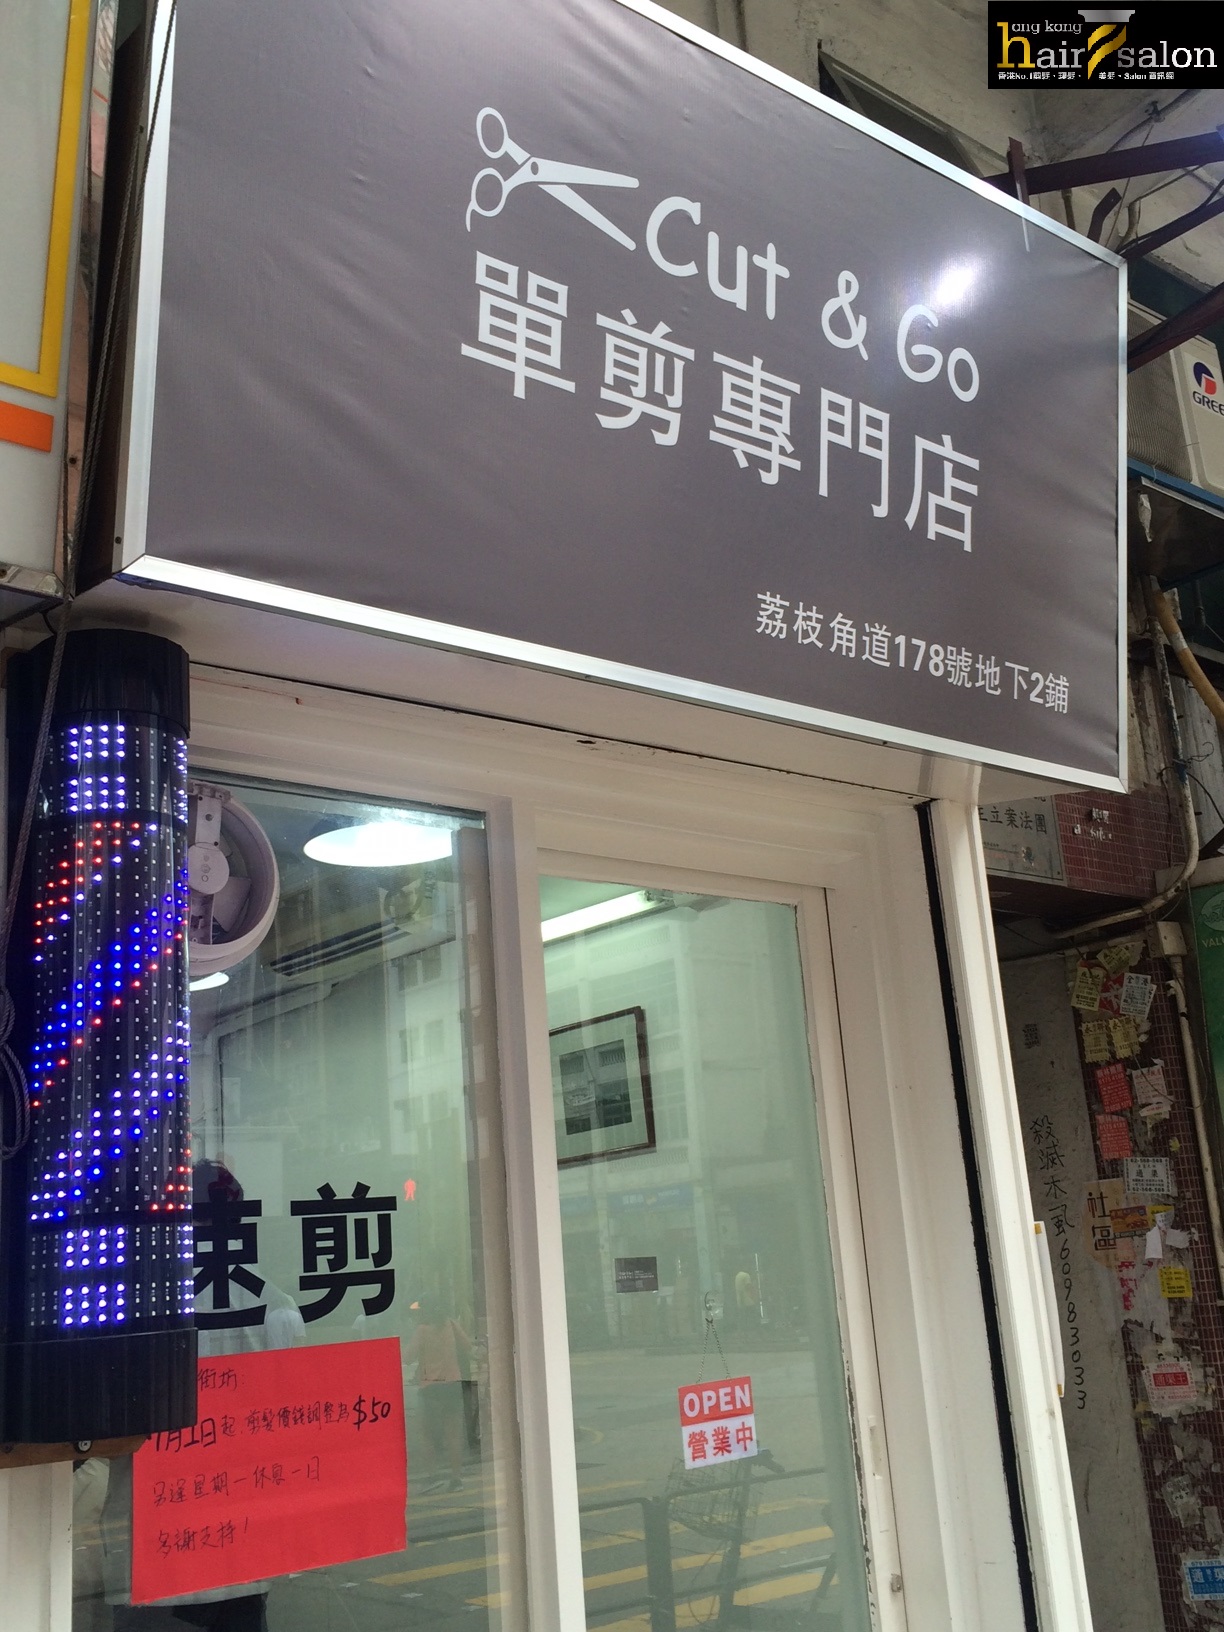 髮型屋: Cut & Go 單剪專門店